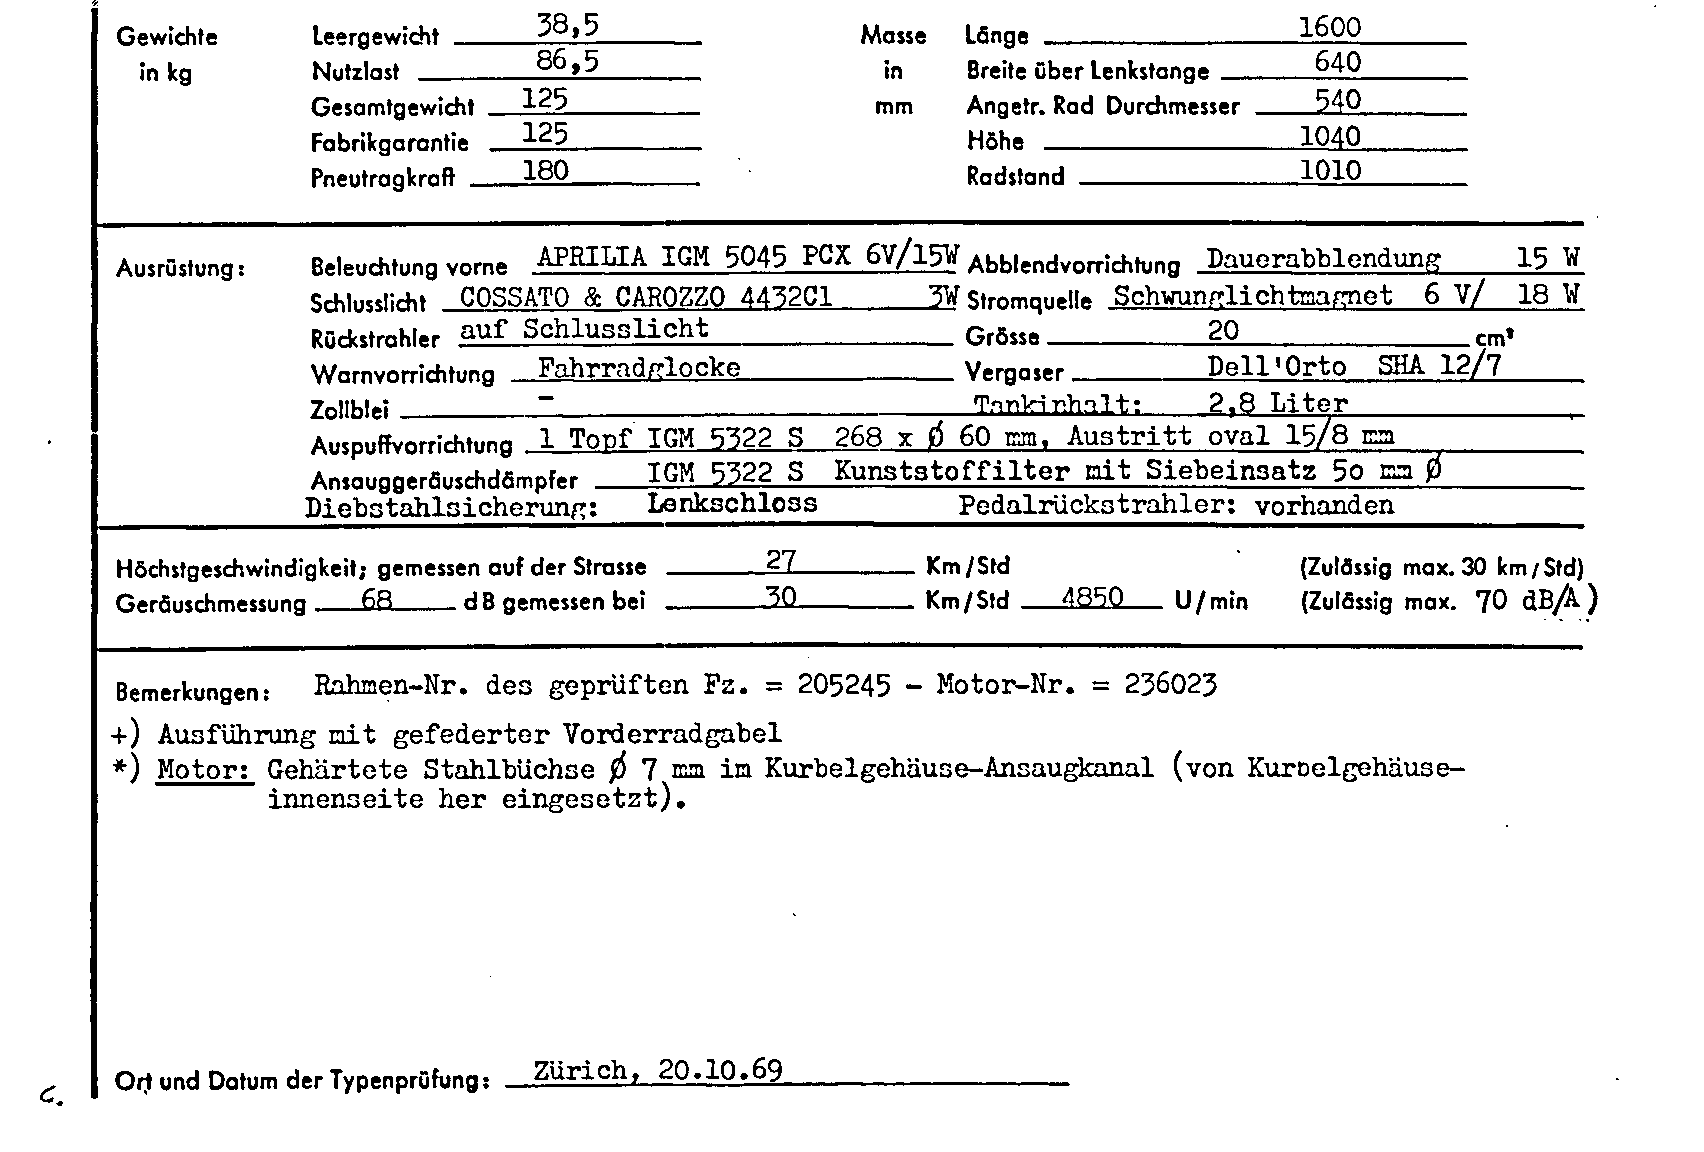 Swiss Certificate of Conformity 7075 German Page 2 (TG.DE.7075.2.png)